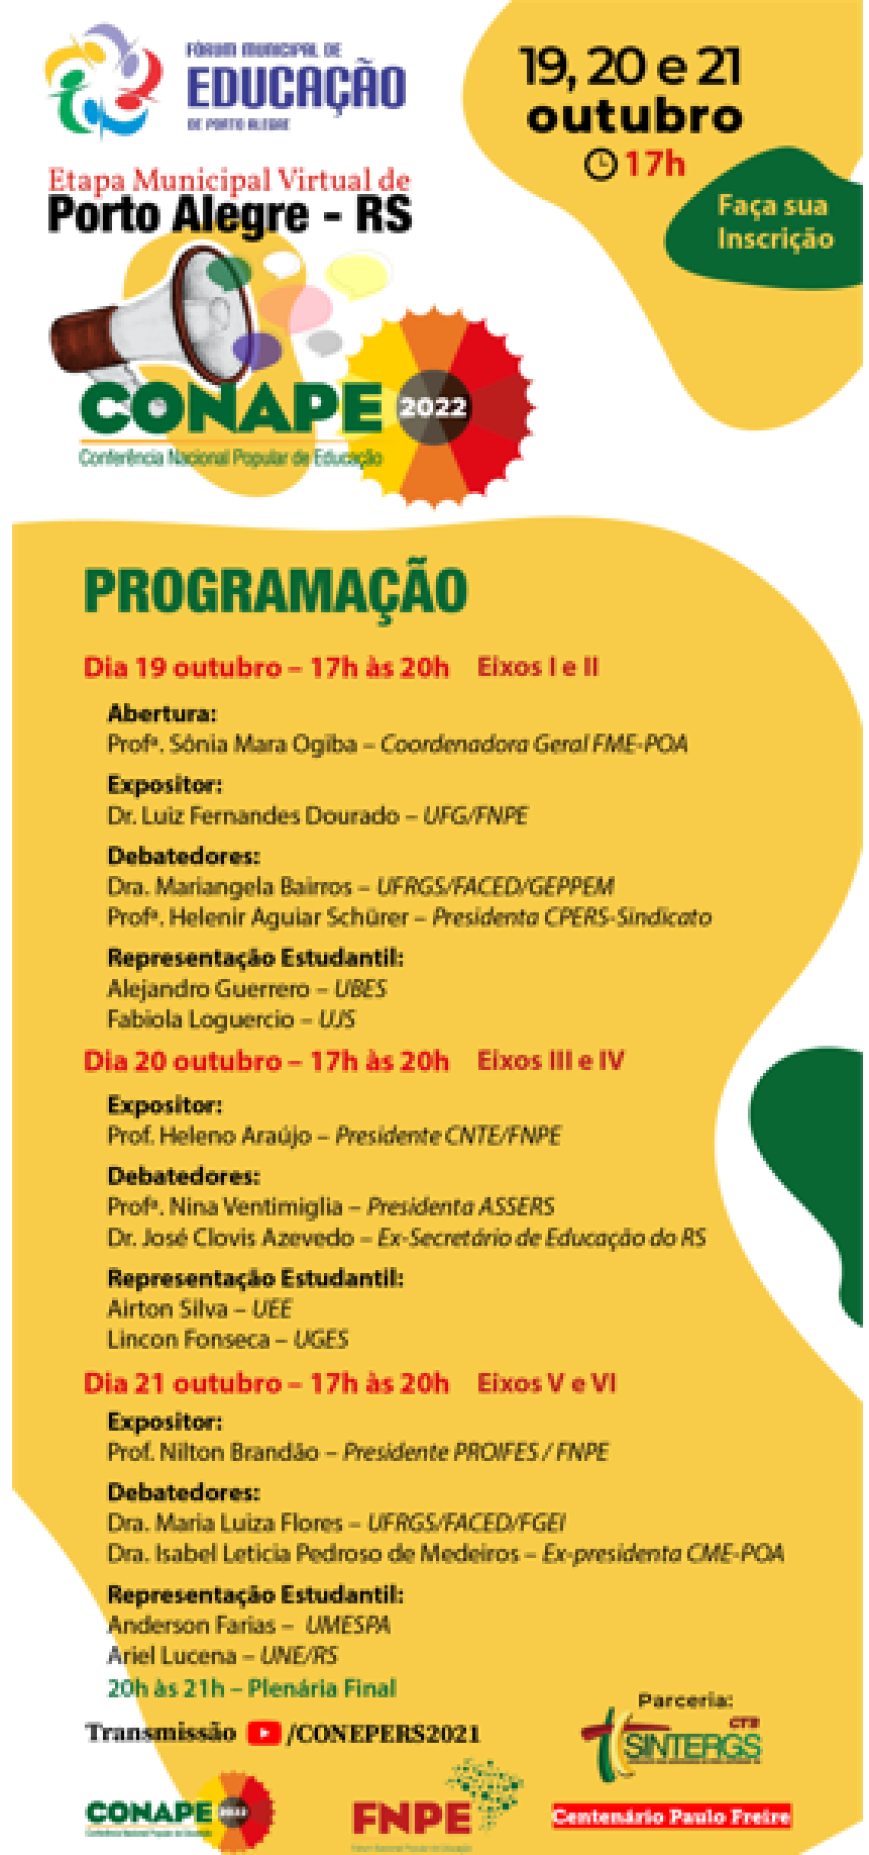 Etapa de Porto Alegre da Conferência Popular de Educação acontece de 19 a 21 de outubro